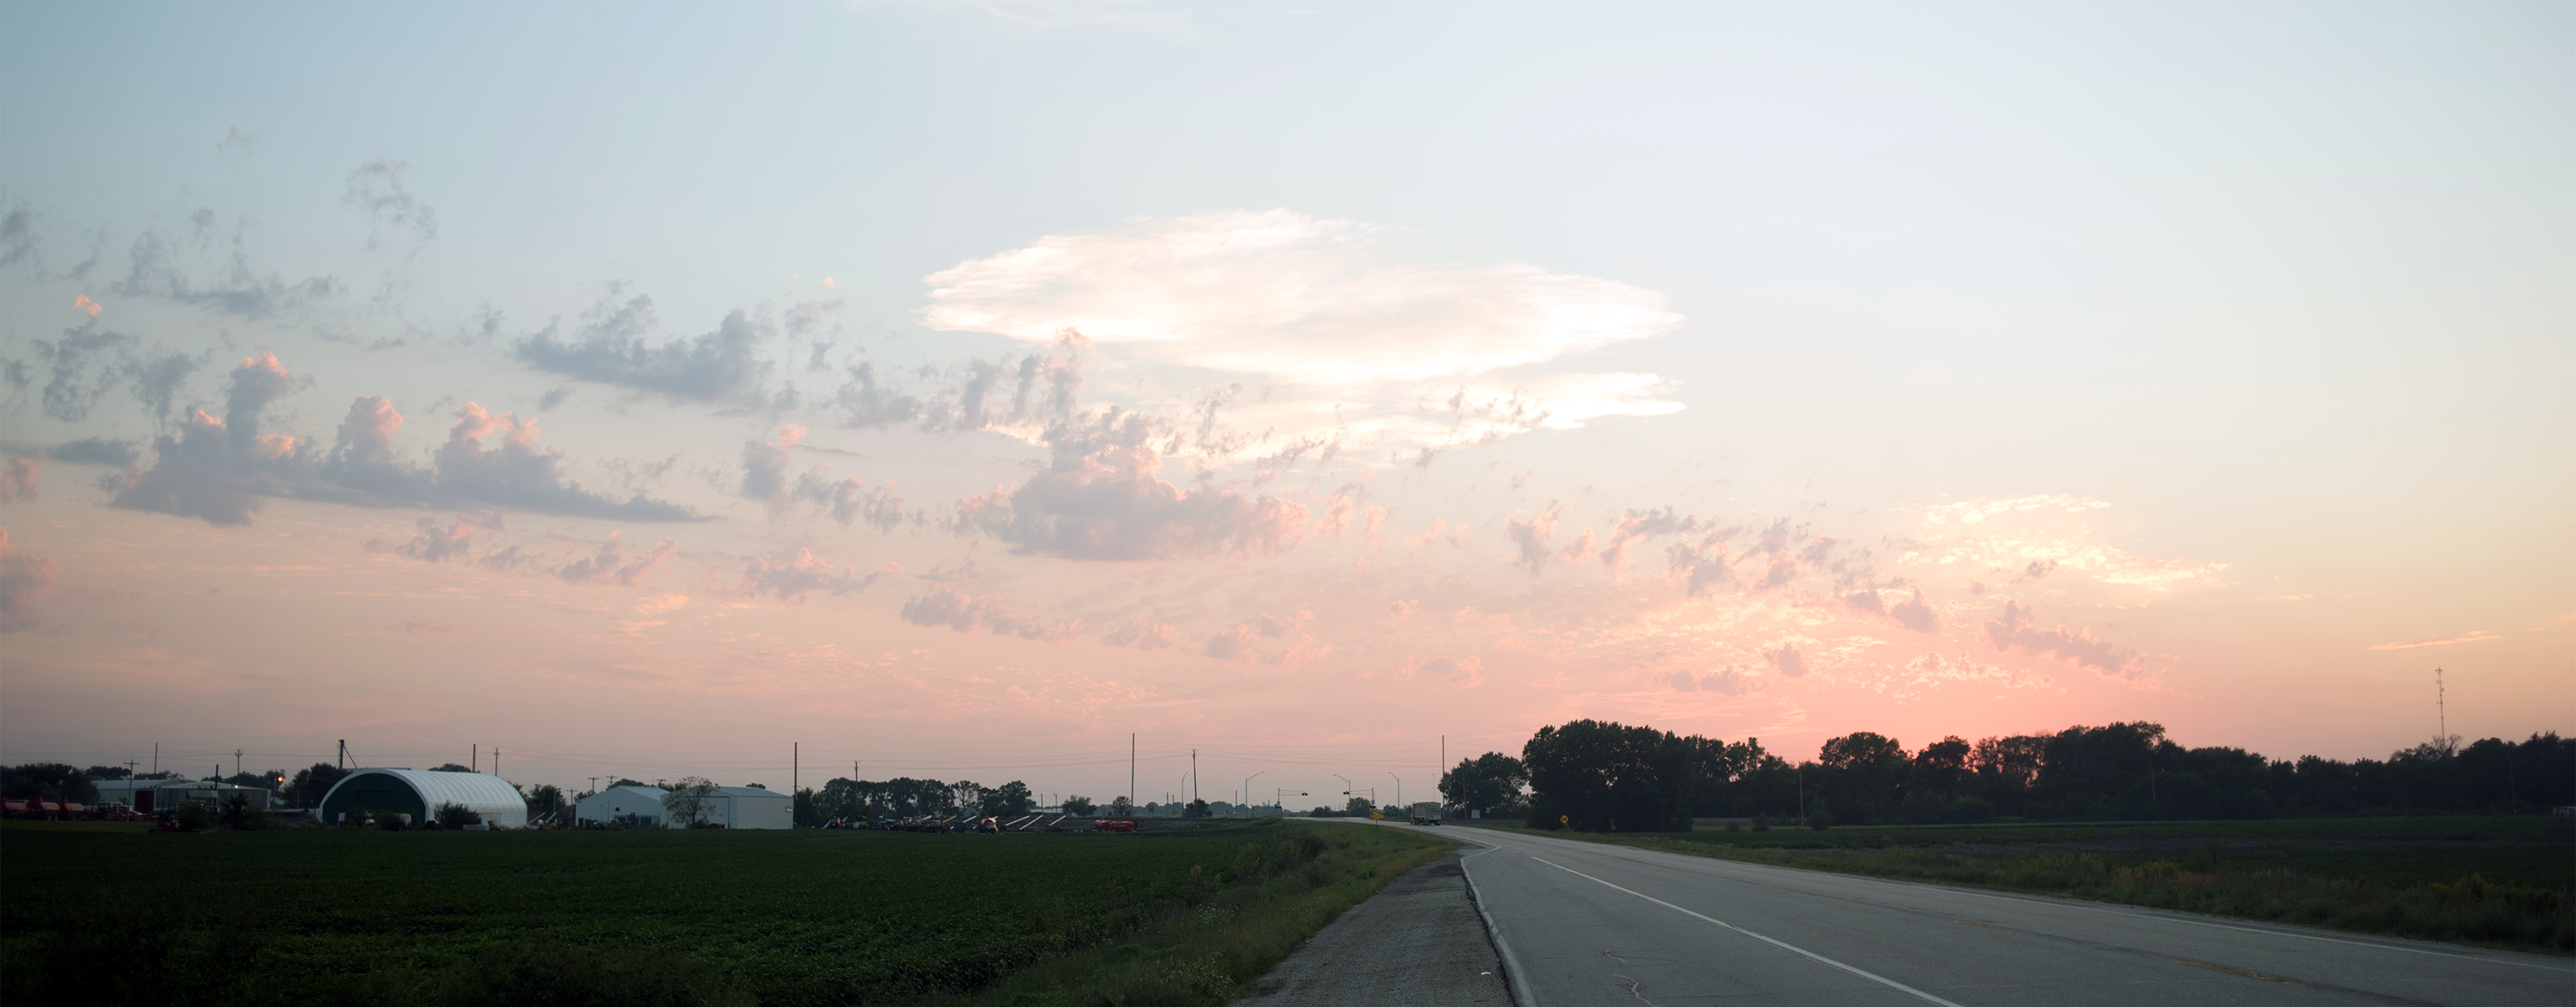 A Sunset In Rural Iowa